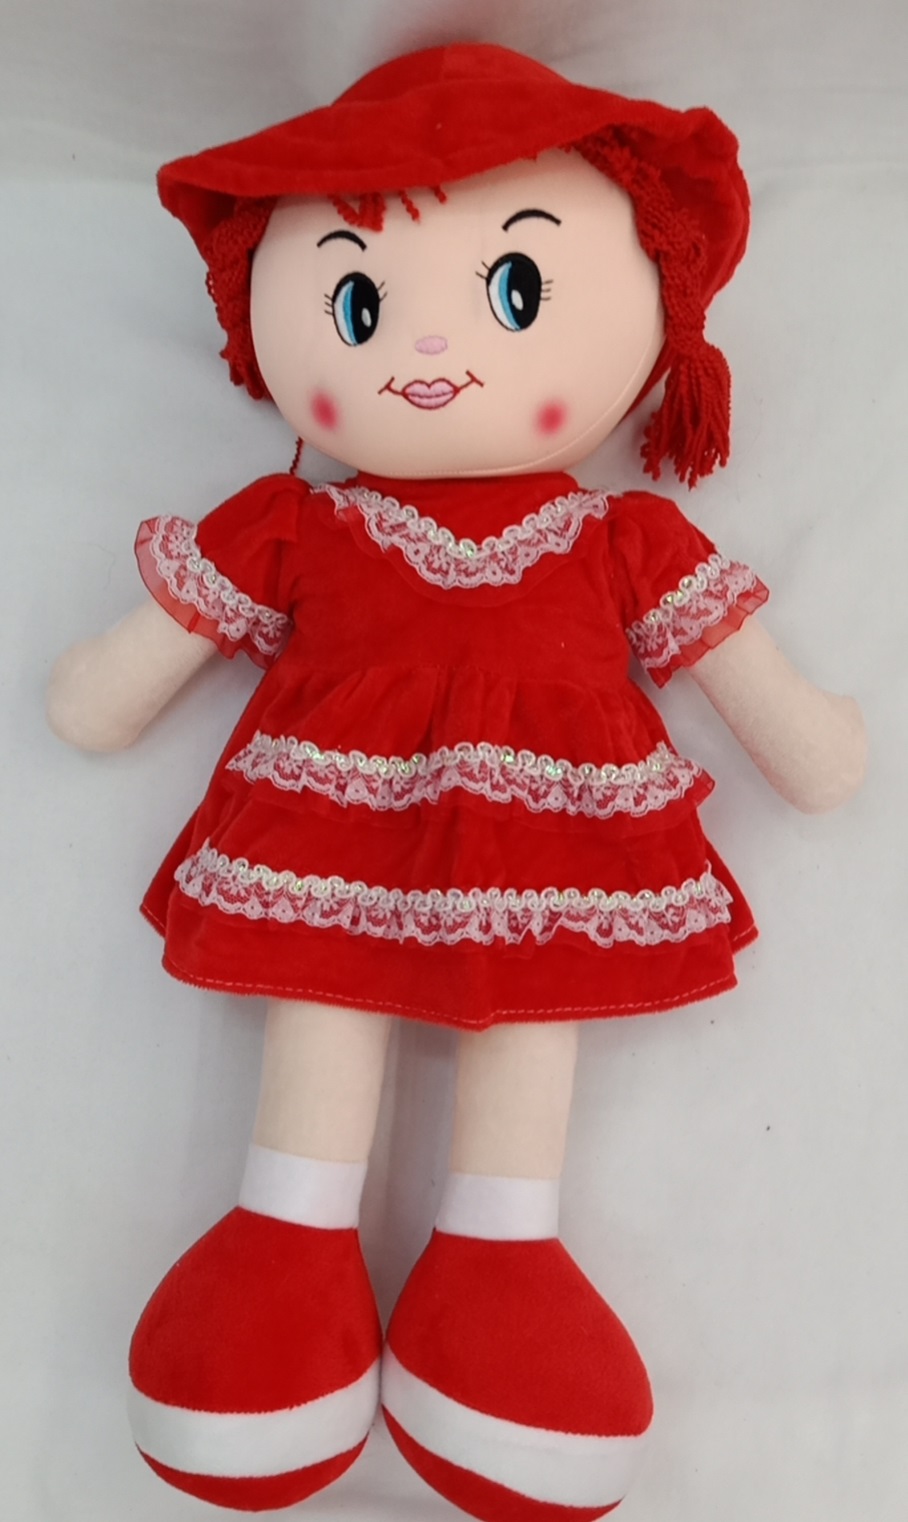 可爱布娃娃毛绒玩具公仔女孩儿童创意生日礼物洋娃娃